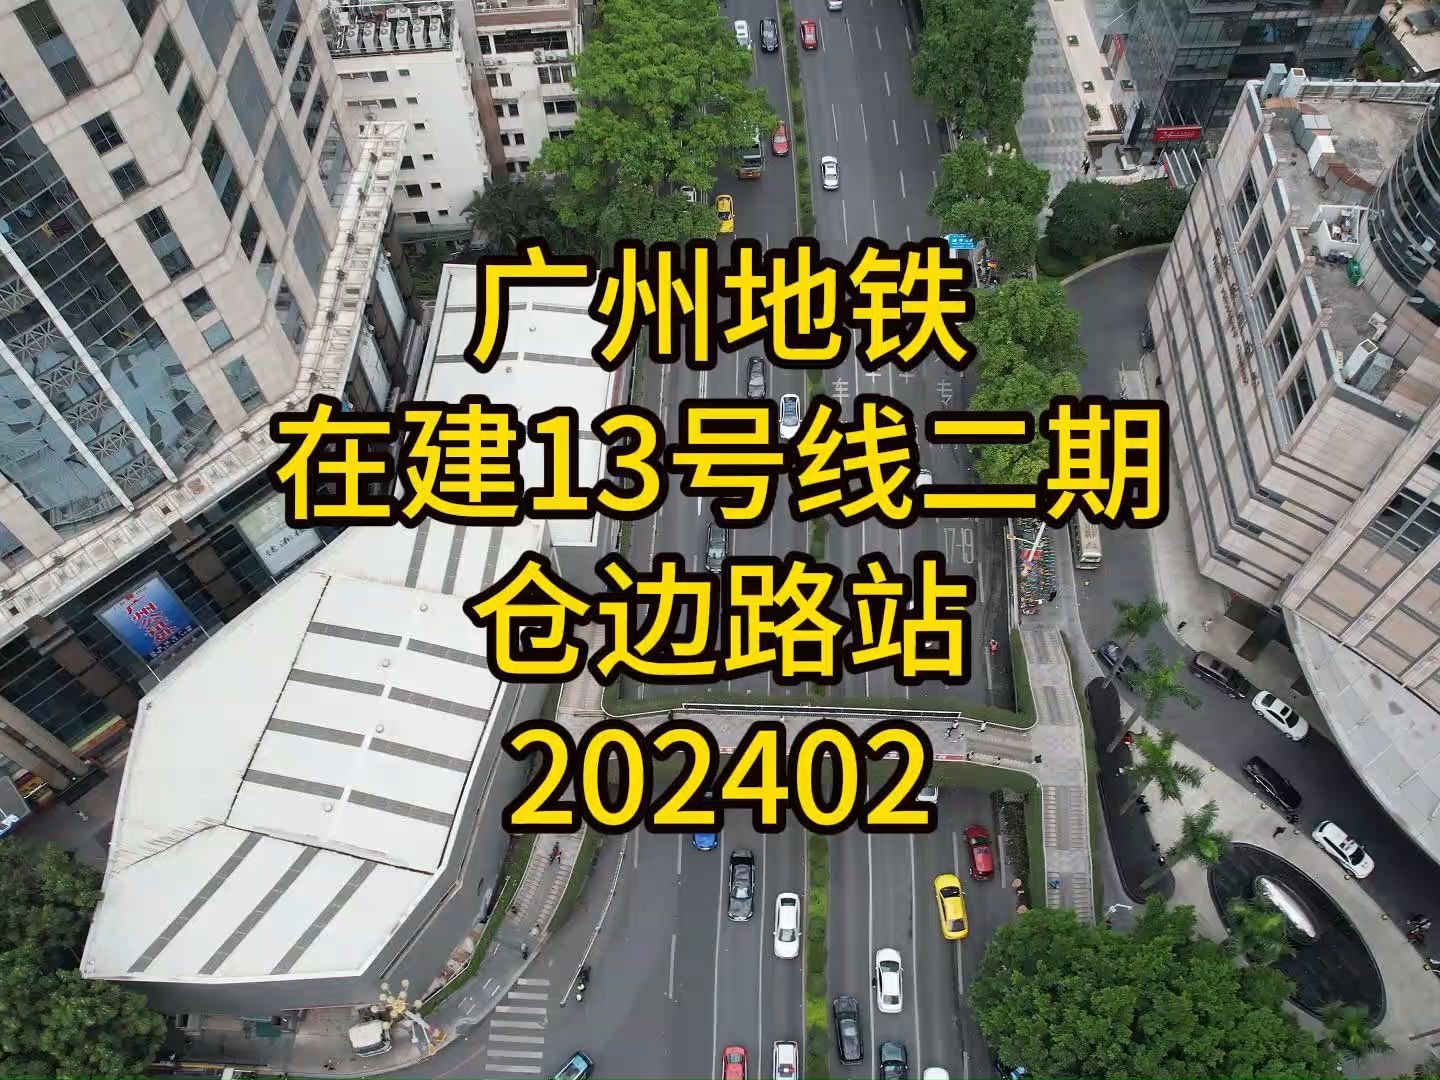 广州地铁在建13号线二期仓边路站202402